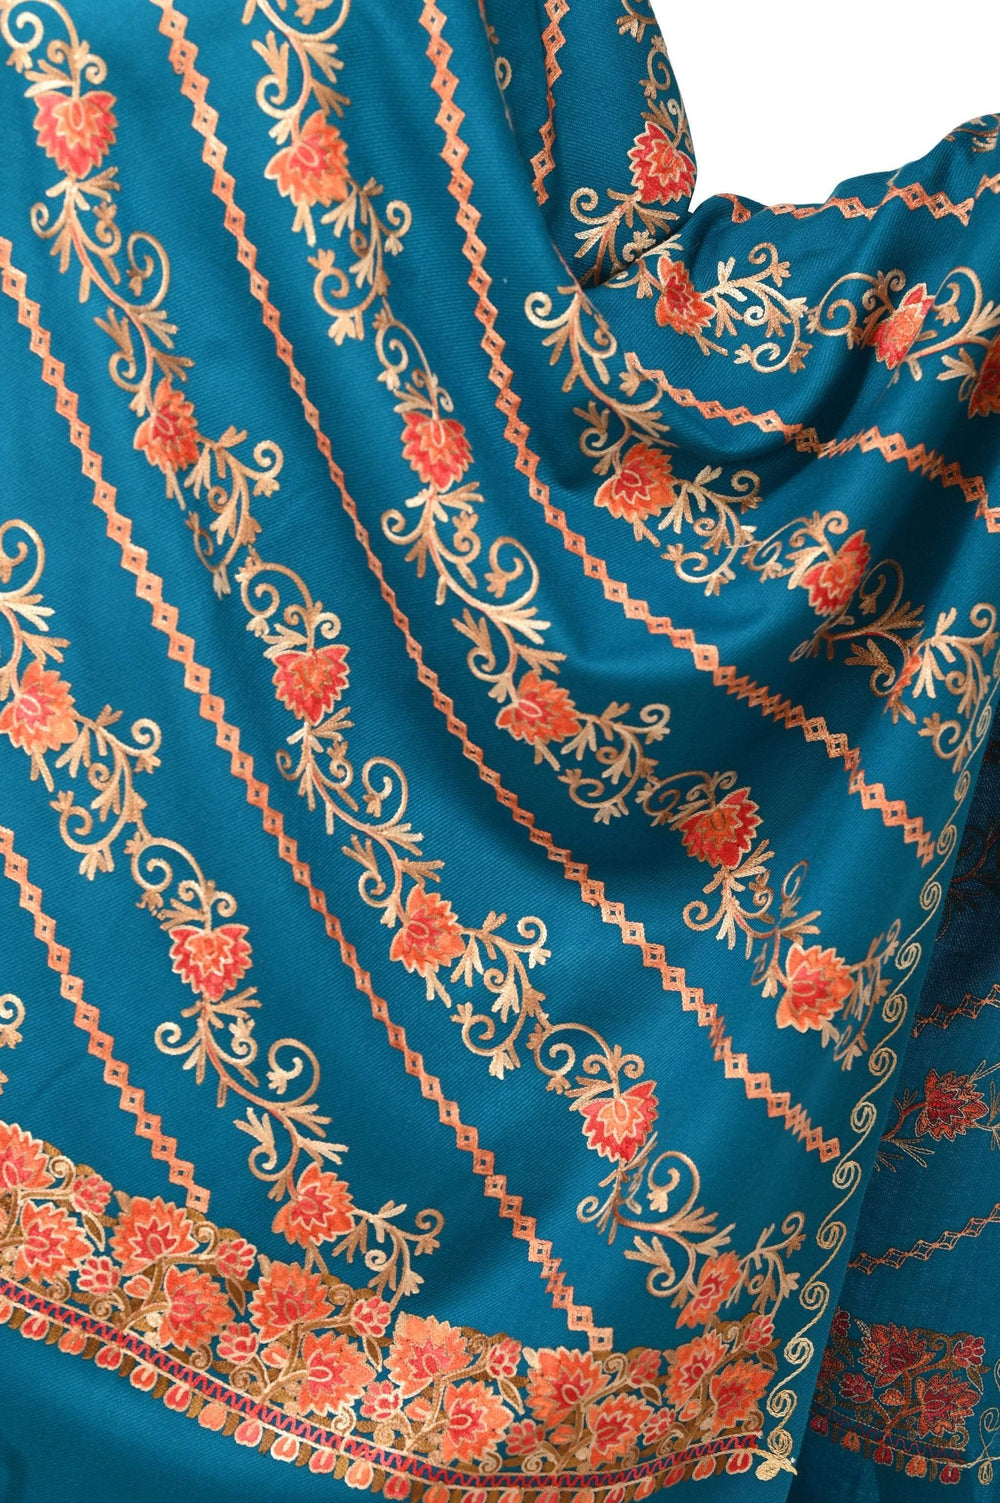 Pashwool 70x200 Pashwool Womens Kashmiri Embroidery Stole, Woollen Stole, Arabic Blue